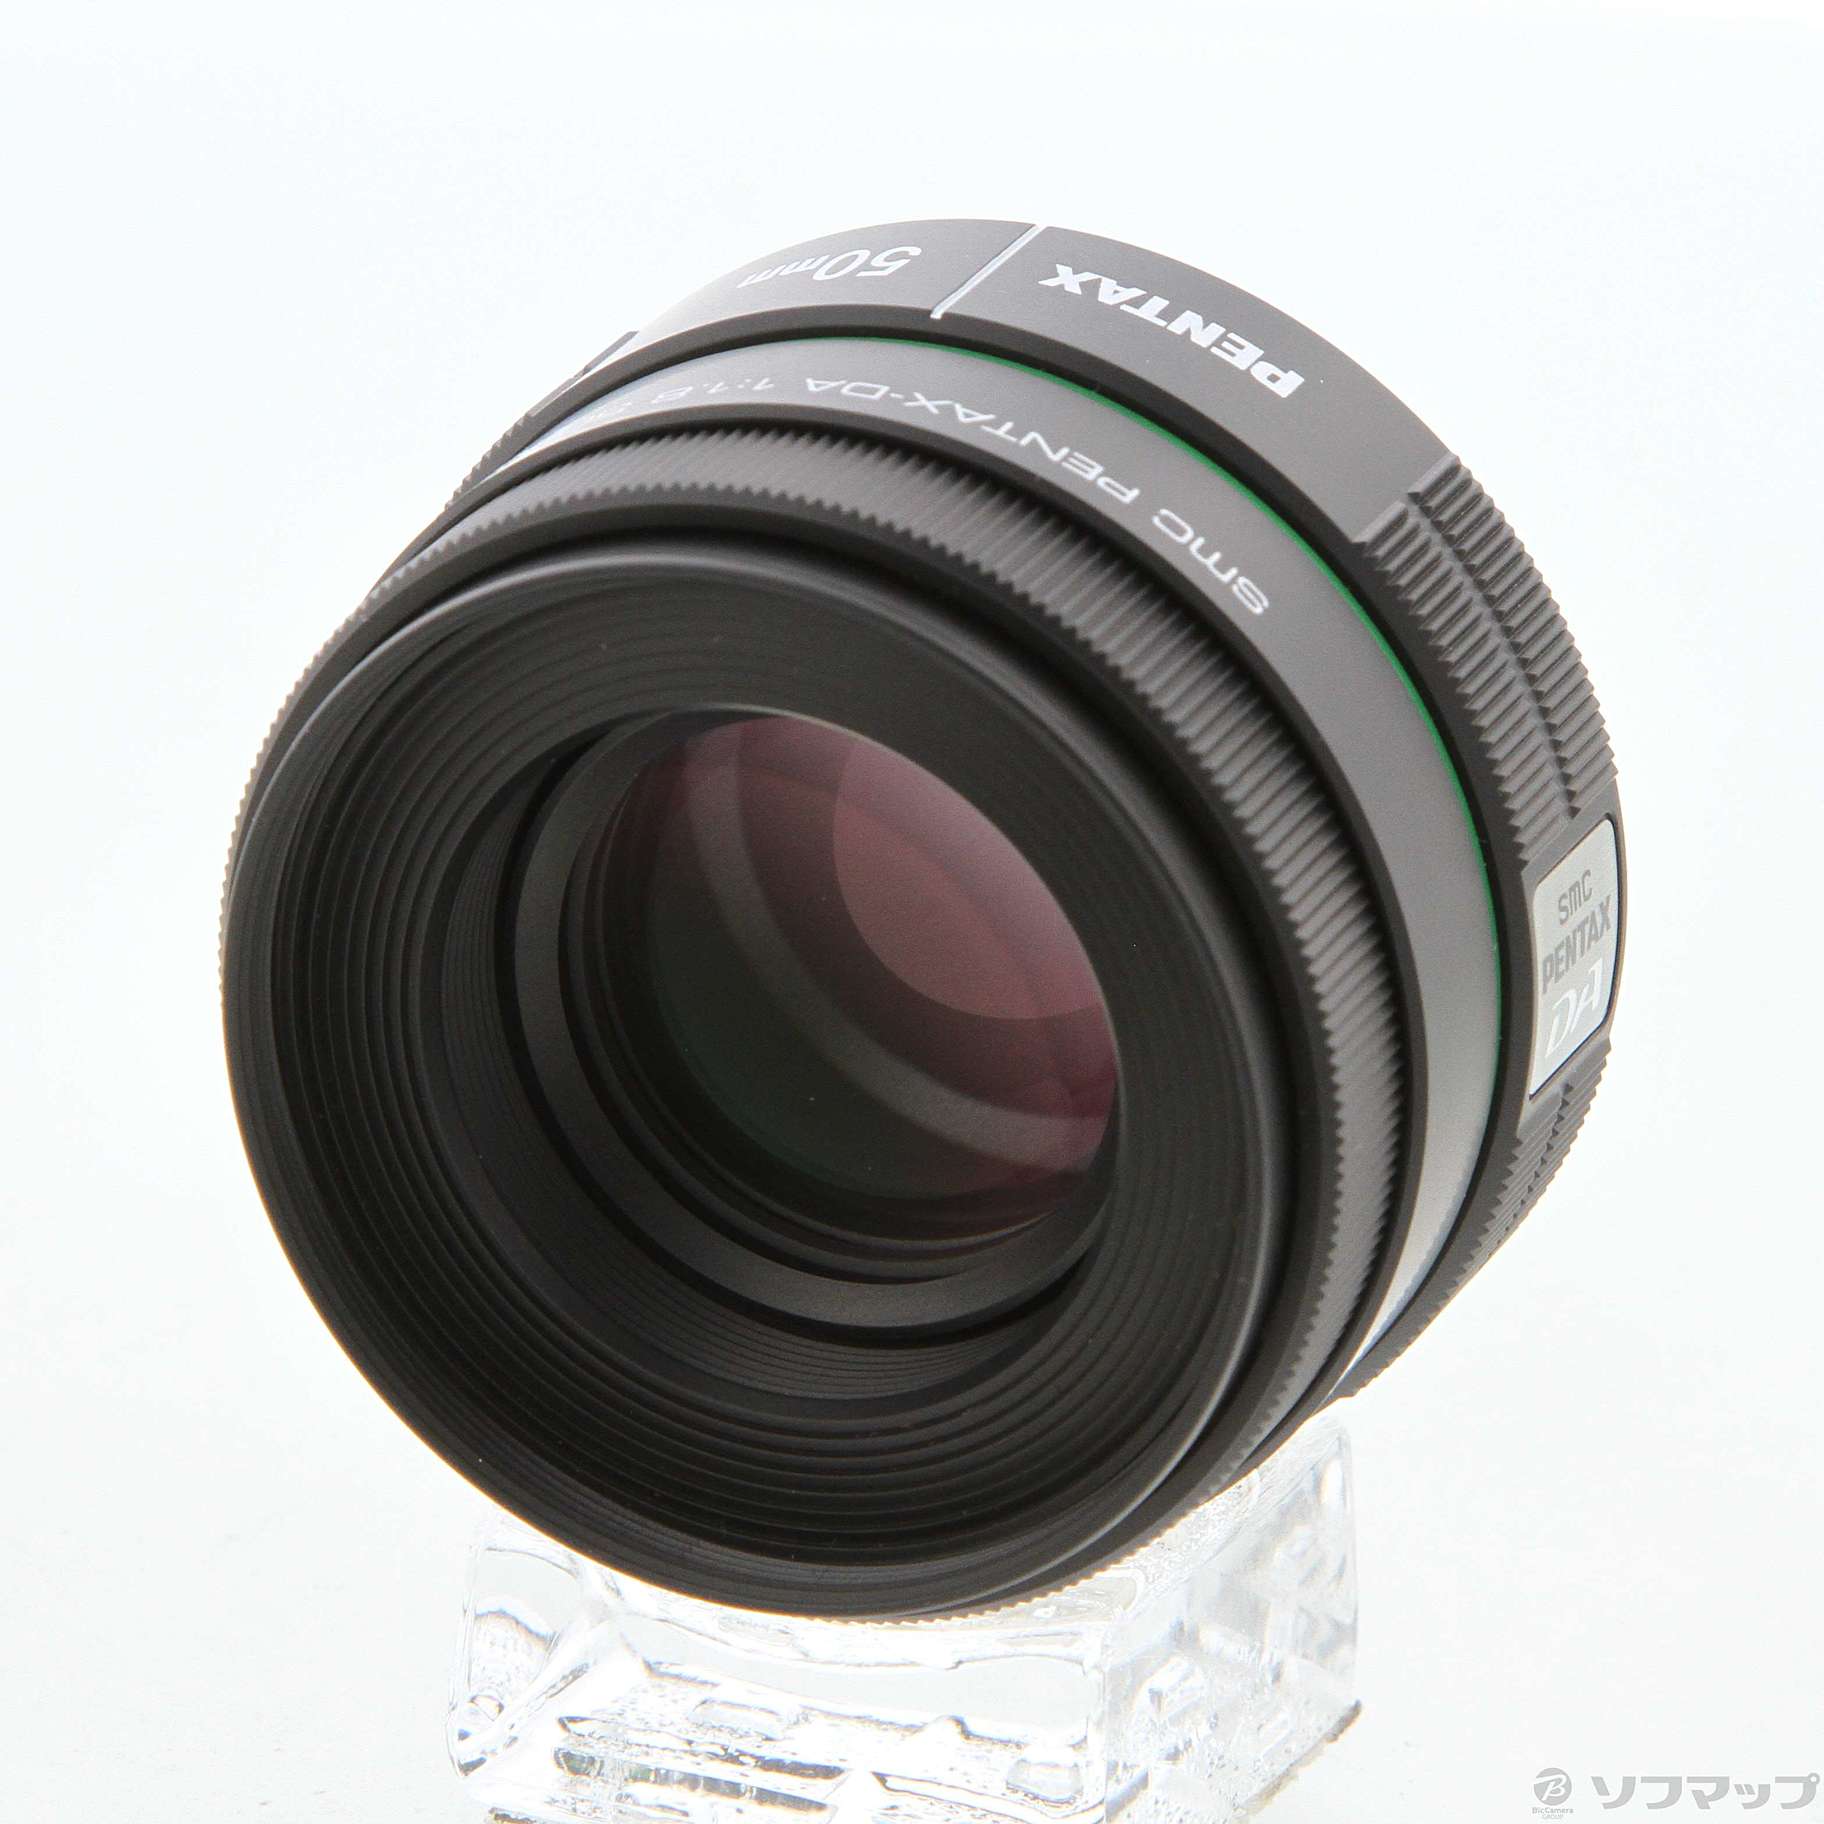 smc PENTAX-DA 50mmF1.8 レンズ